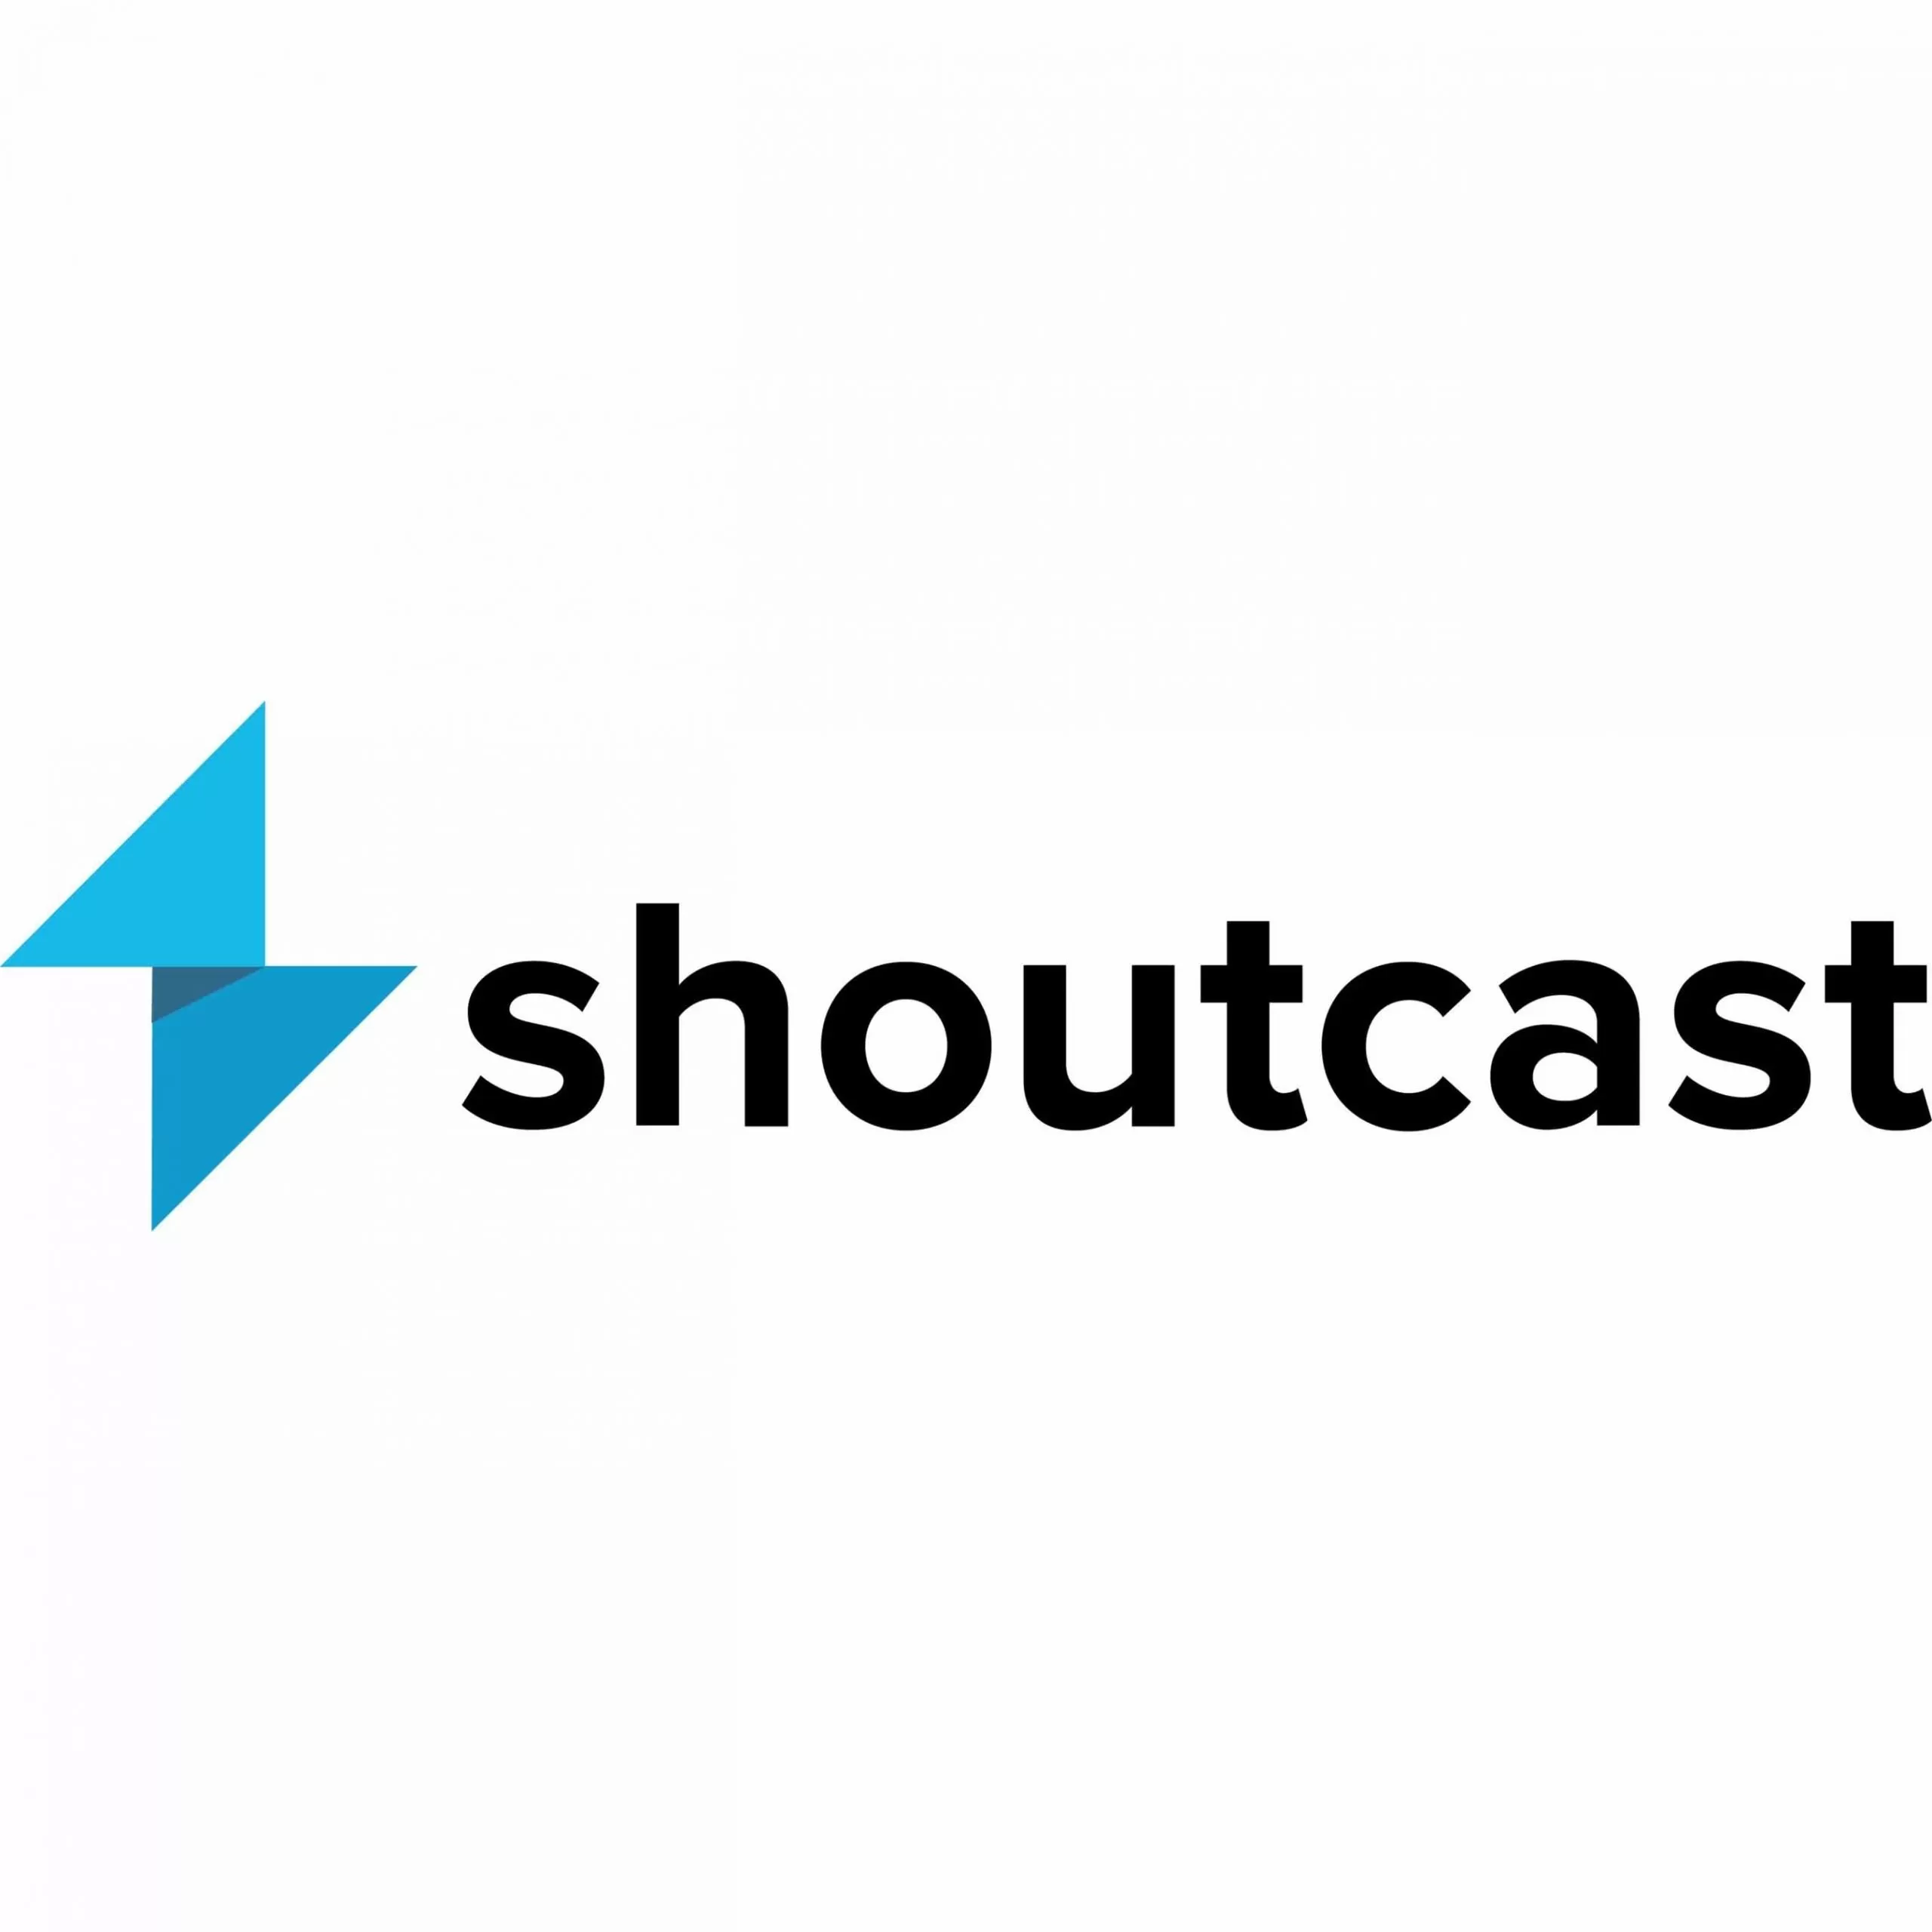 shoutcast.webp